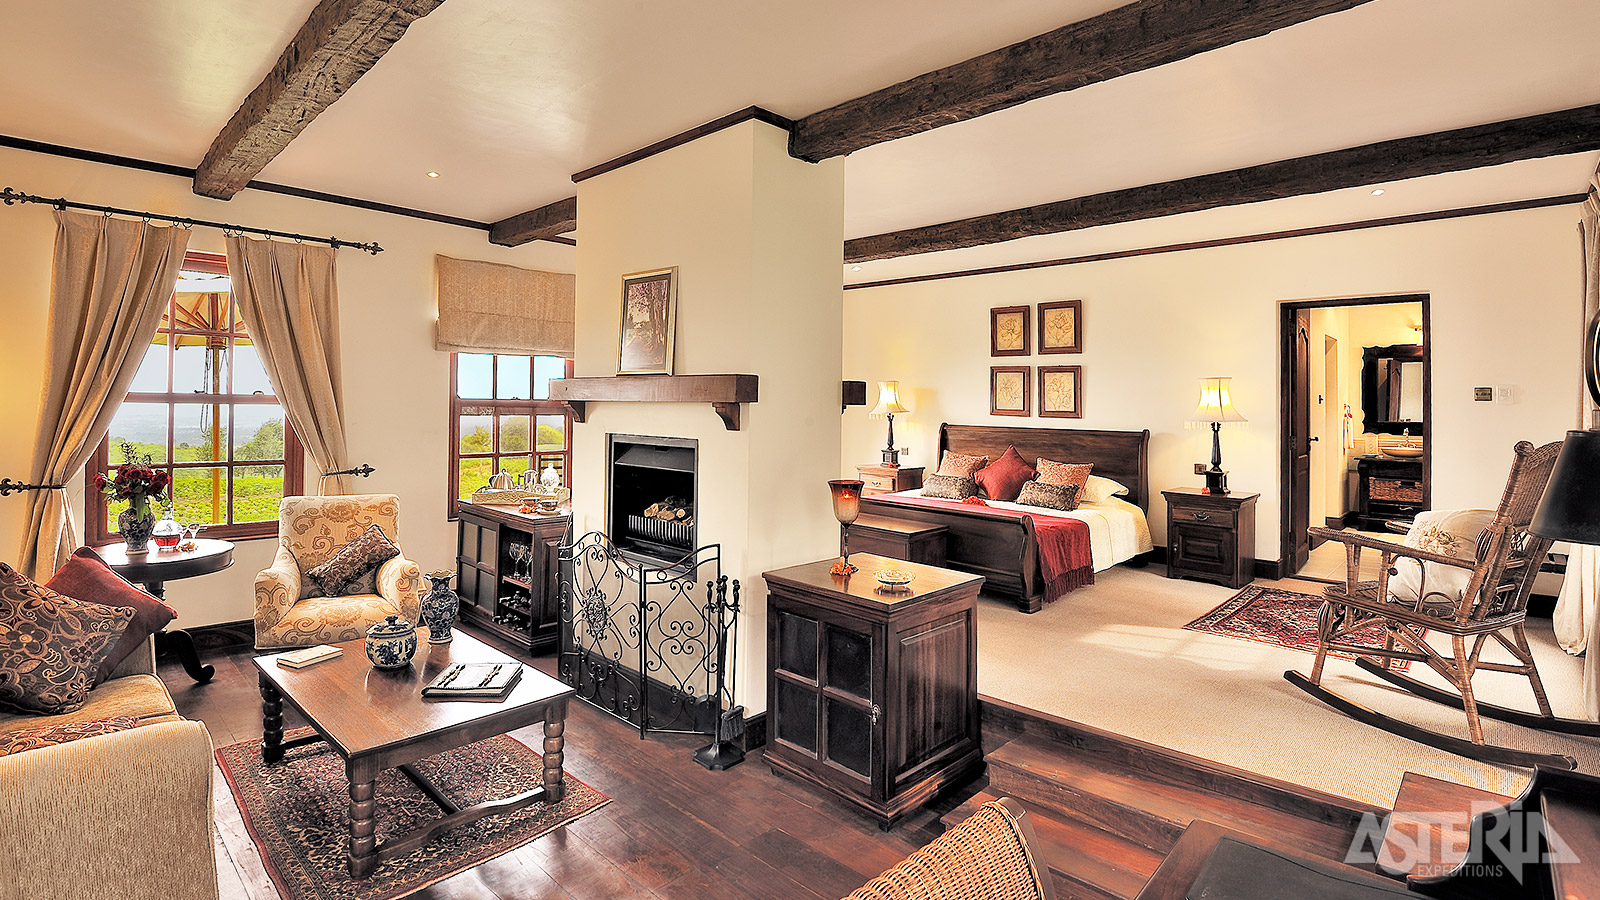 The Manor at Ngorongoro is een elegant boetiekhotel in een koloniale setting, subliem gelegen nabij de krater